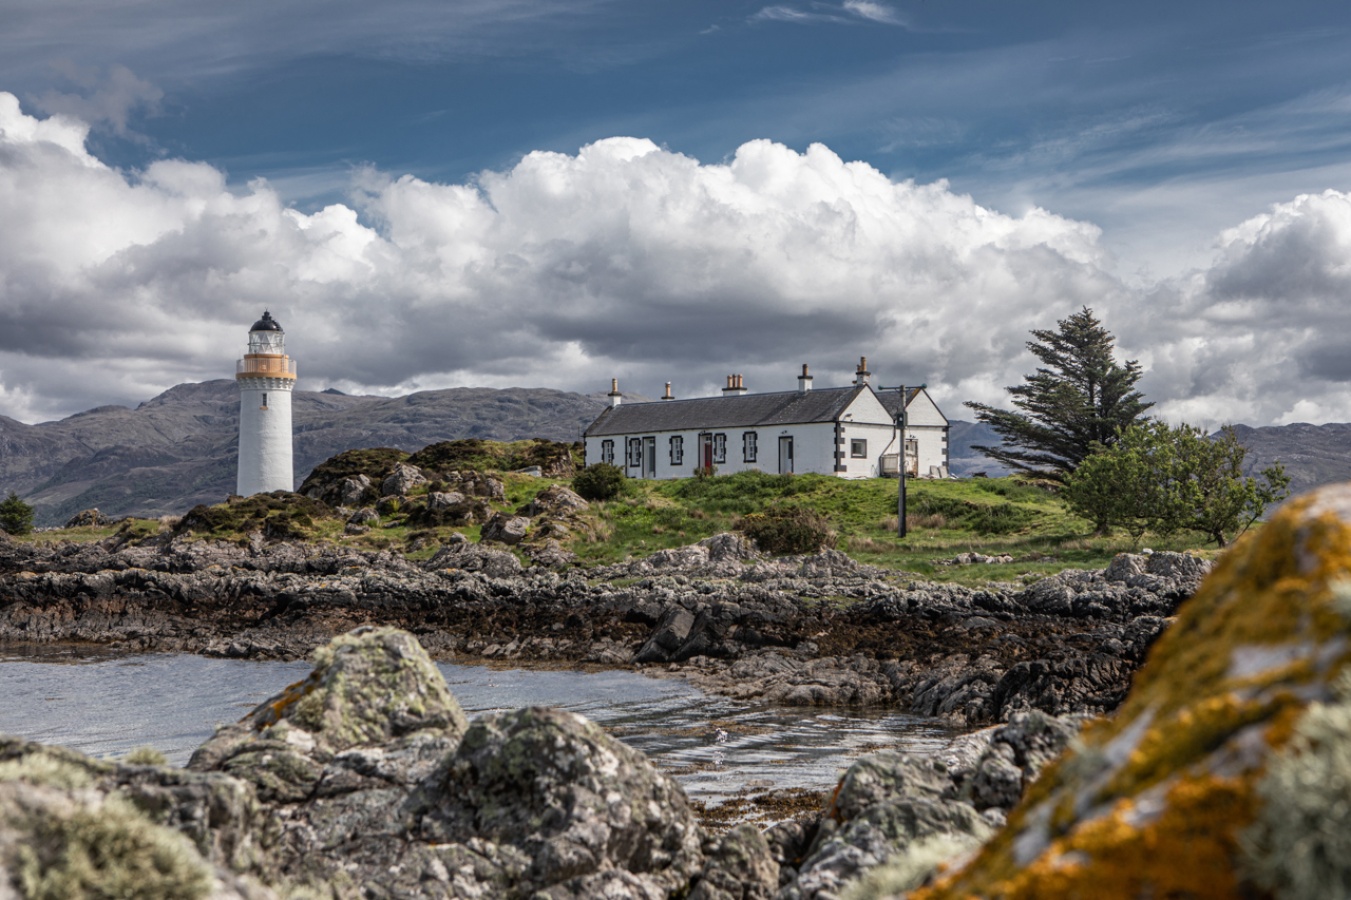 Situato su un'isola privata vicino alla costa, l'Eilean Sionnach Lighthouse Cottage è il luogo perfetto per vivere l’esperienza magica e appartata di Skye. Una barca privata vi porterà verso questa piccola oasi di paradiso.